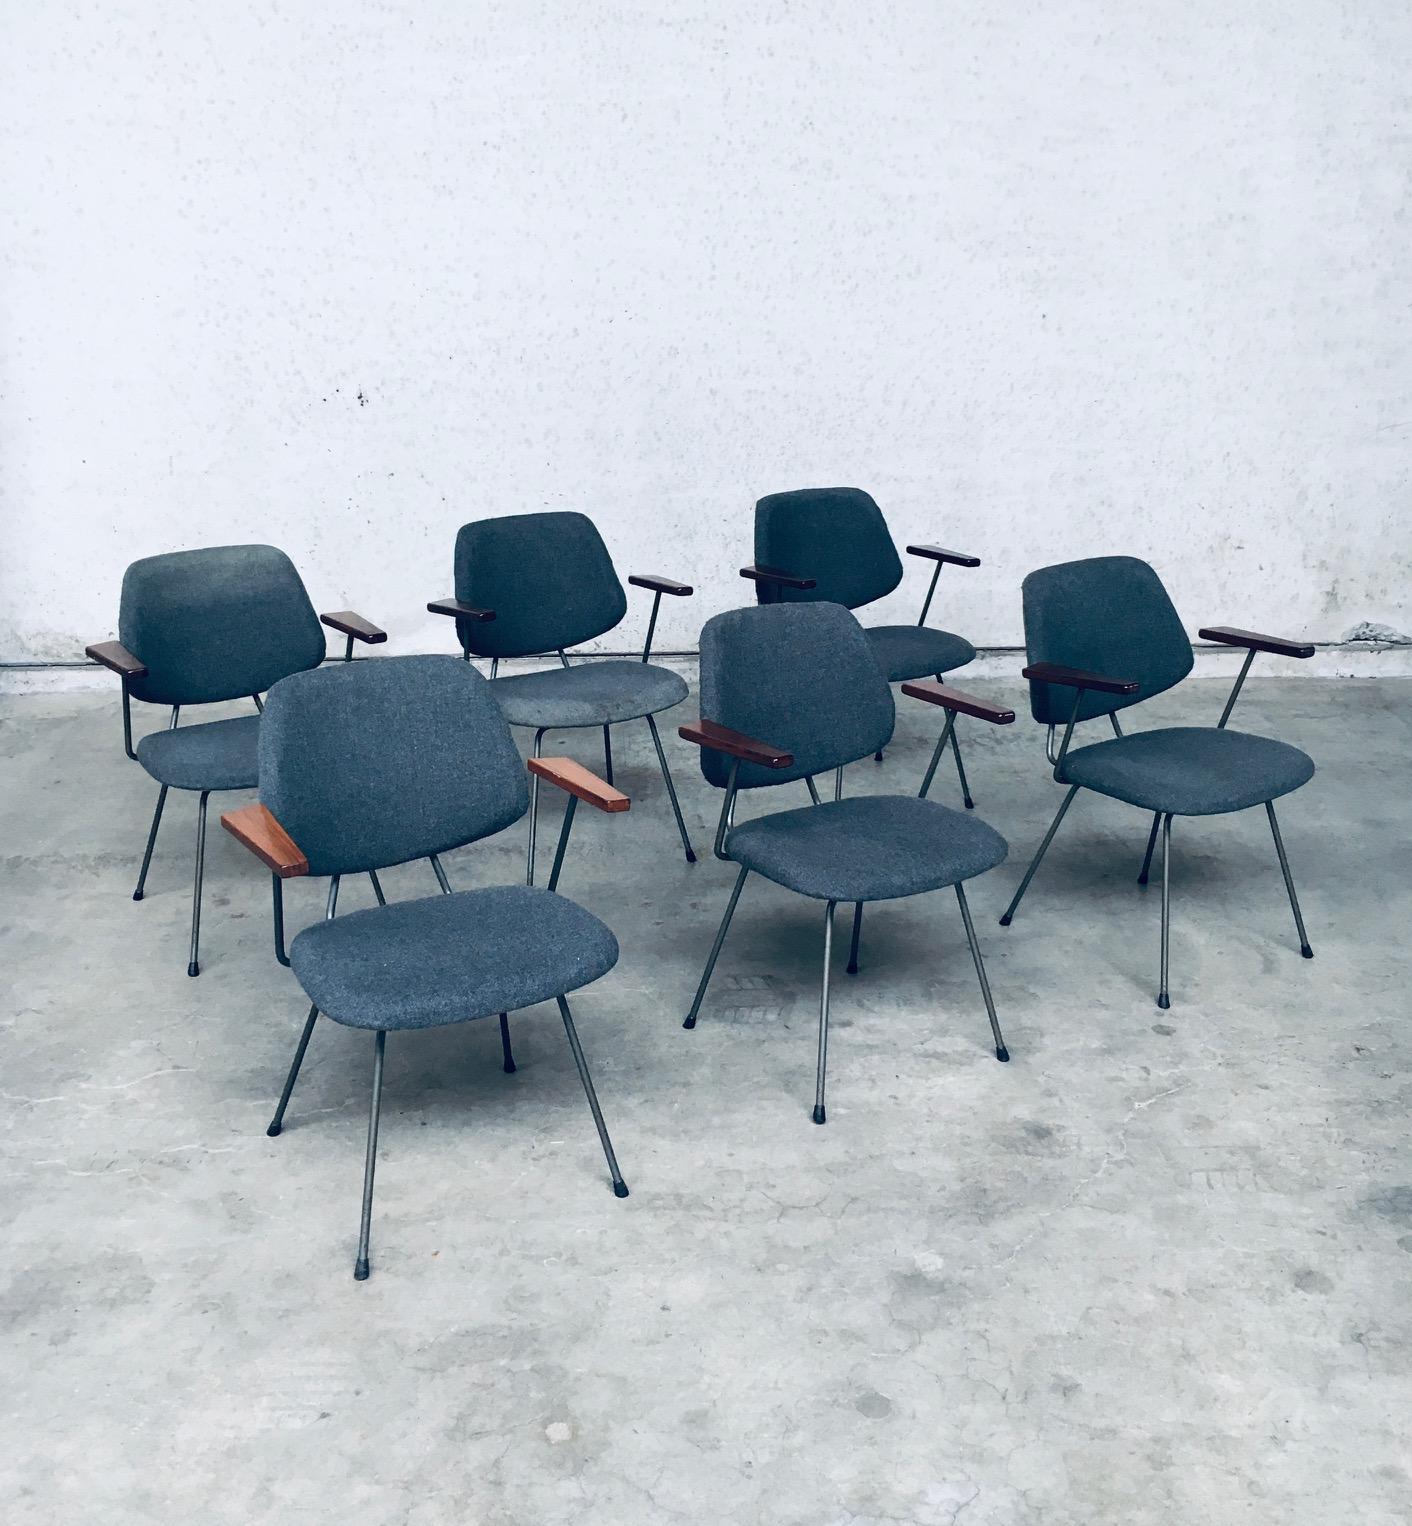 Vintage Midcentury Modern Dutch Design Office Arm Chair Satz von 6 von Wim Rietveld für Kembo. Hergestellt in den Niederlanden, in den 1950er Jahren. Stühle mit grauem, bläulichem Stoff auf grau lackiertem Stahlrohrgestell mit Armlehnen aus